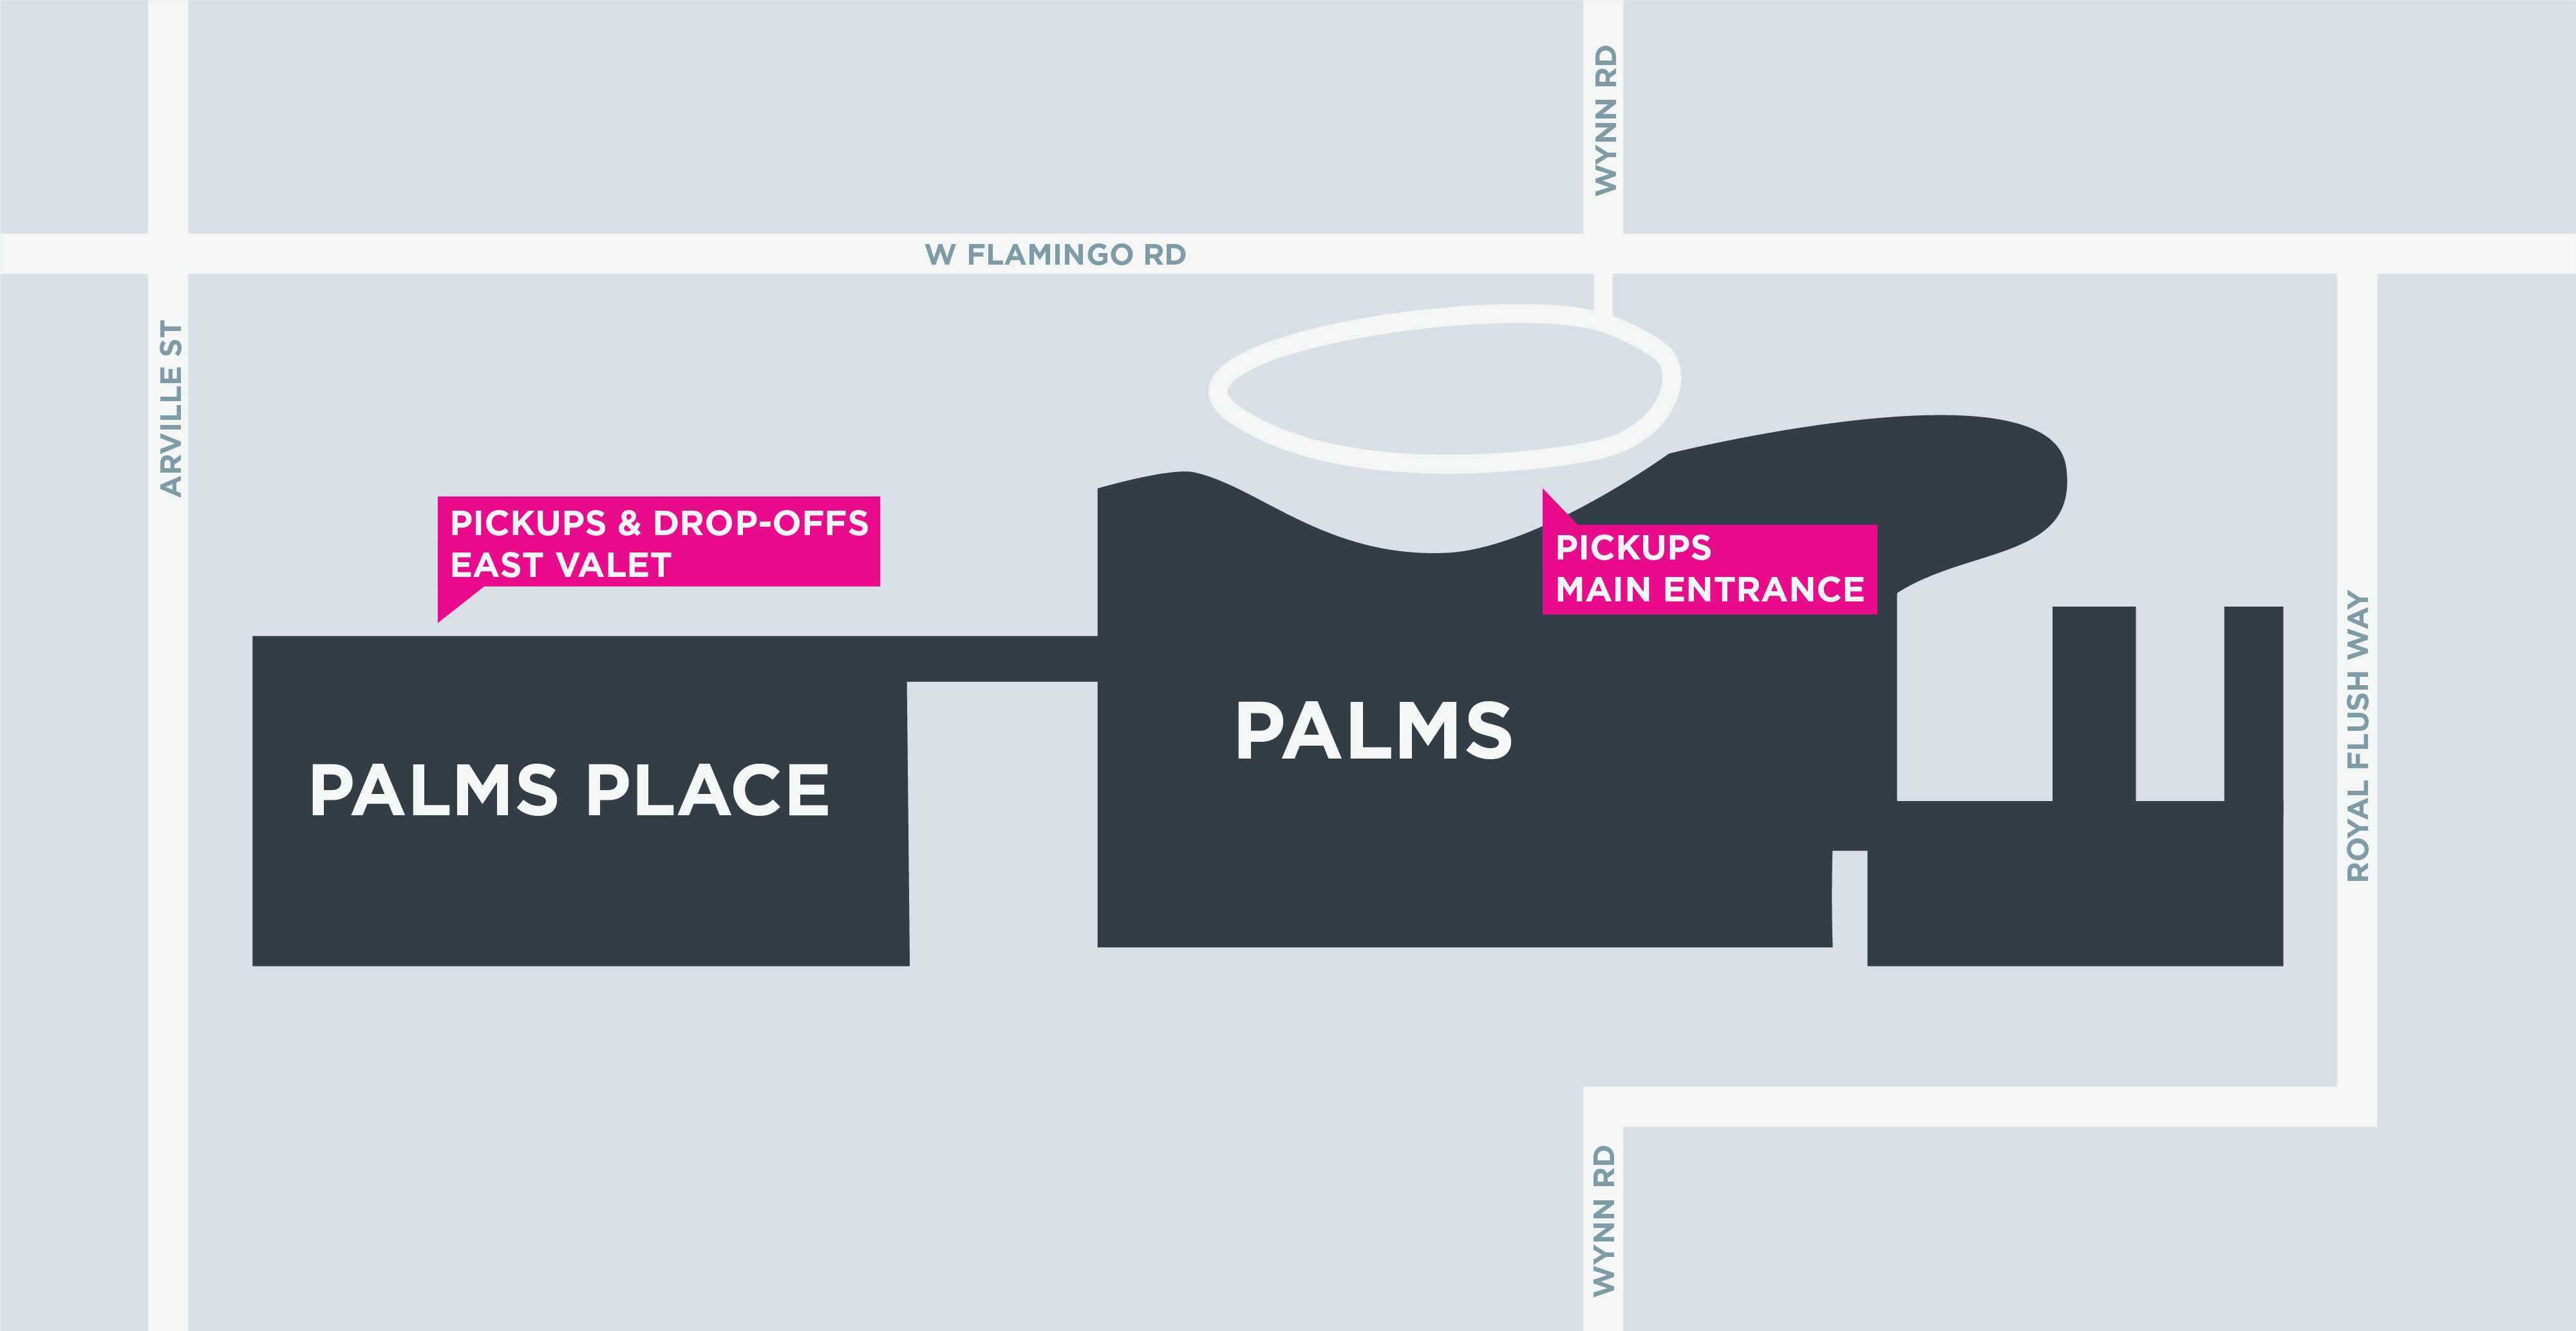 Mapa de las áreas para recoger y dejar pasajeros en Palms and Palms Place, en Las Vegas.